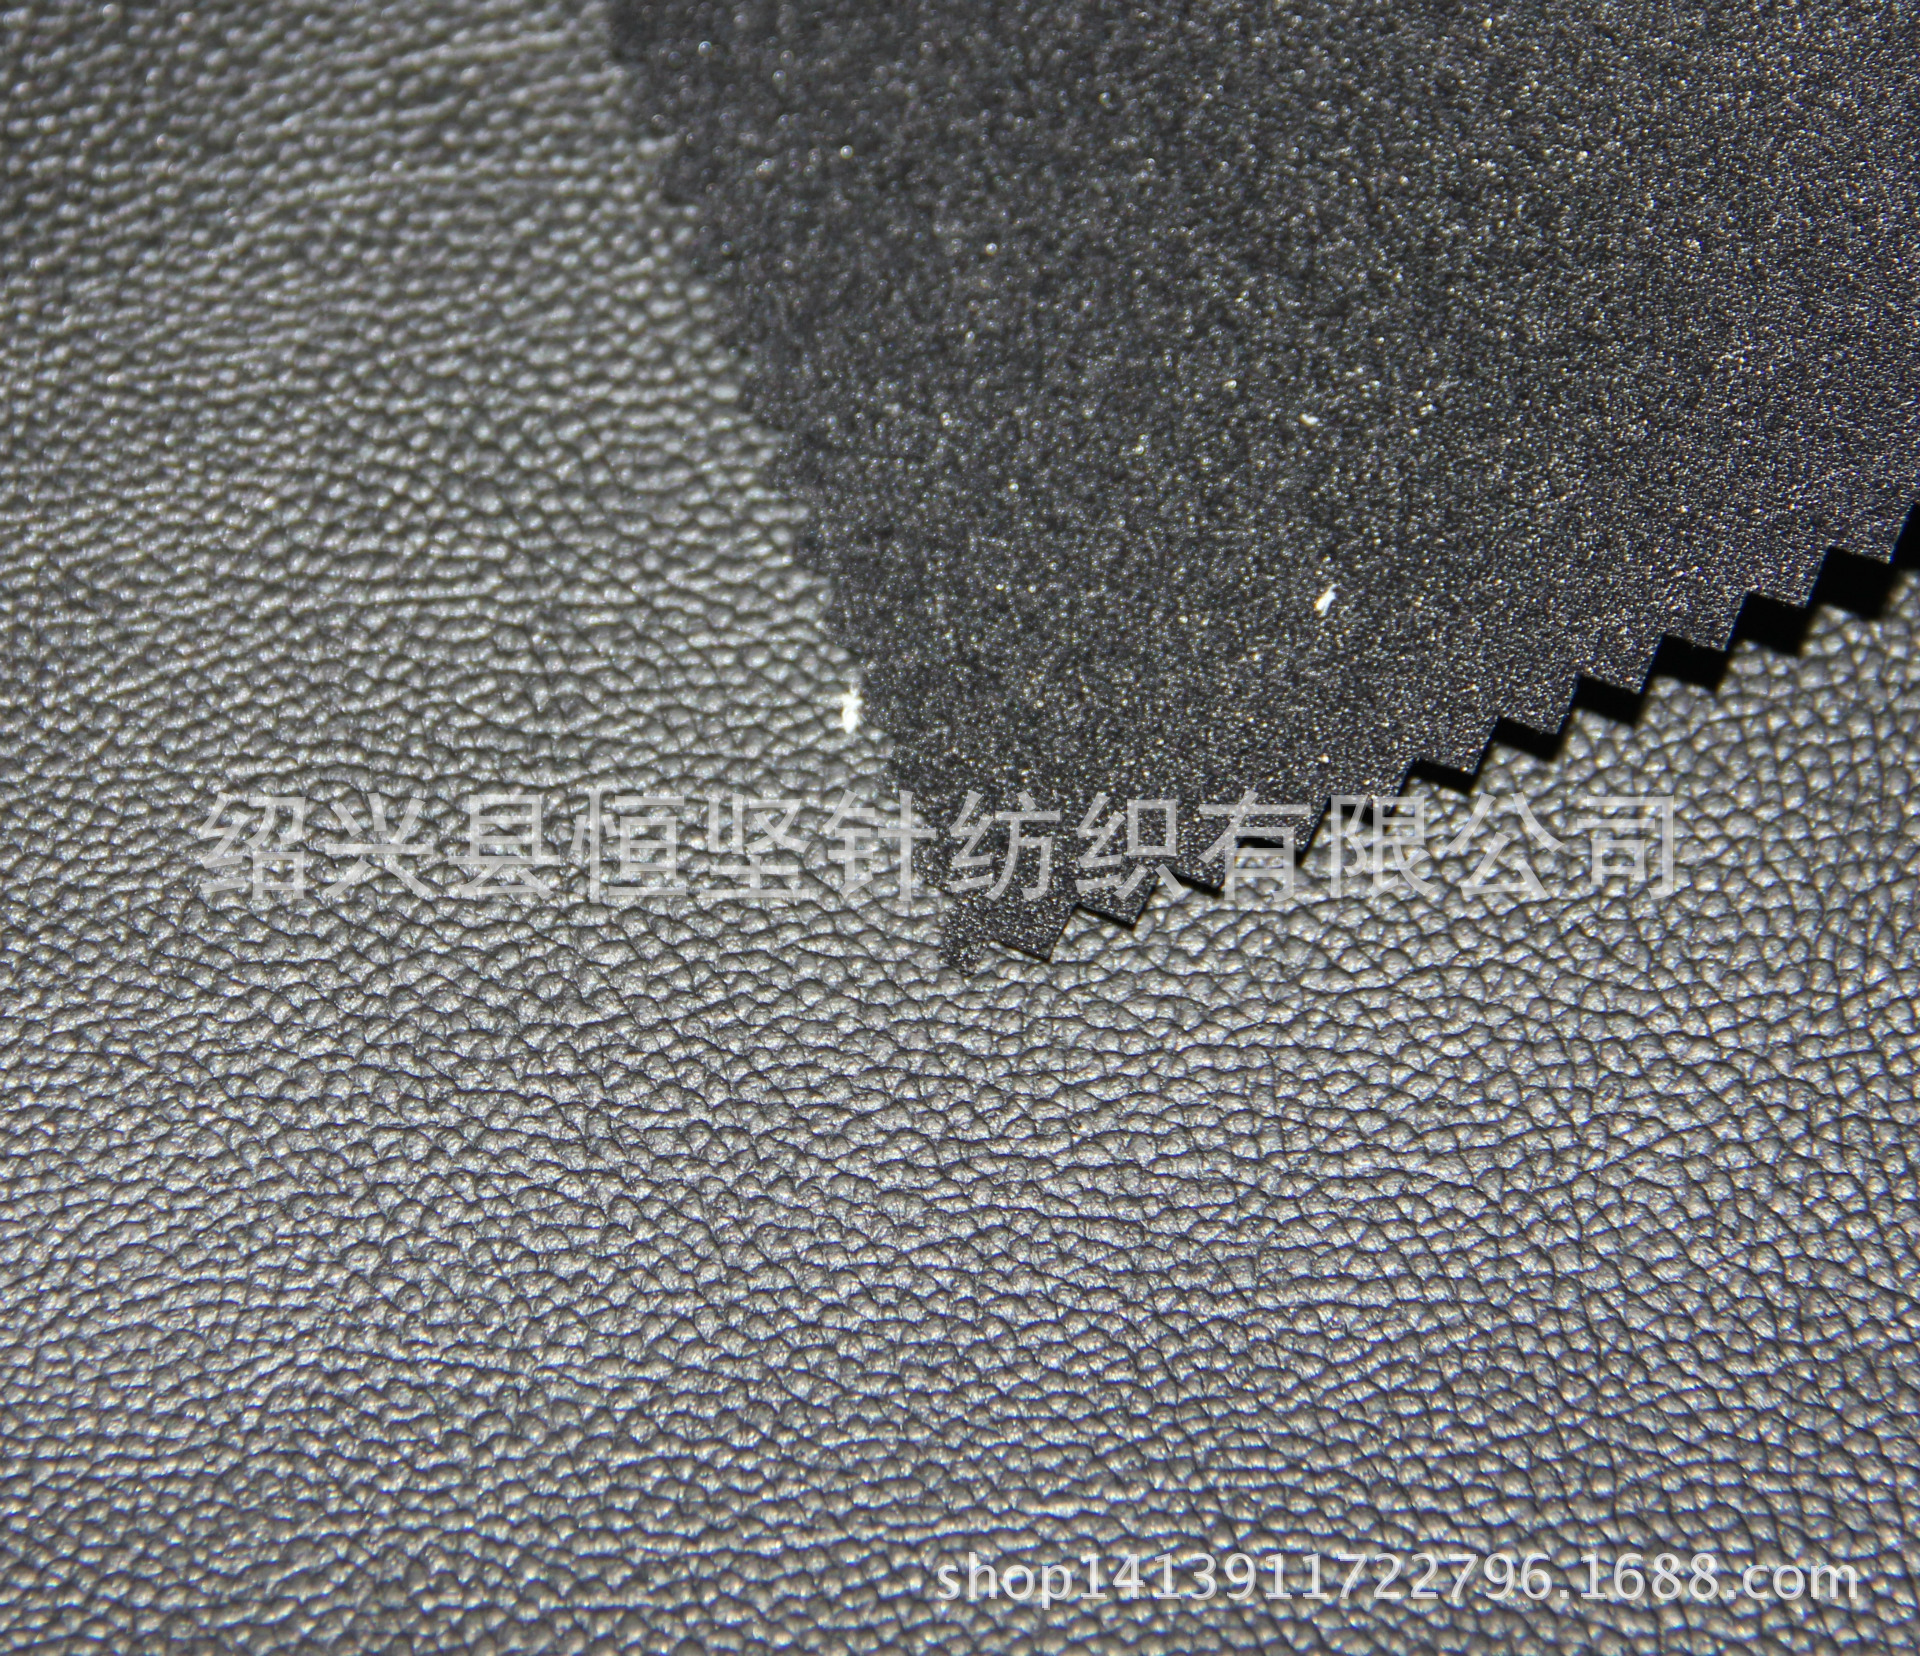 厂家直销高品质PVC压延革 沙发家具皮革 人造革 篮球纹